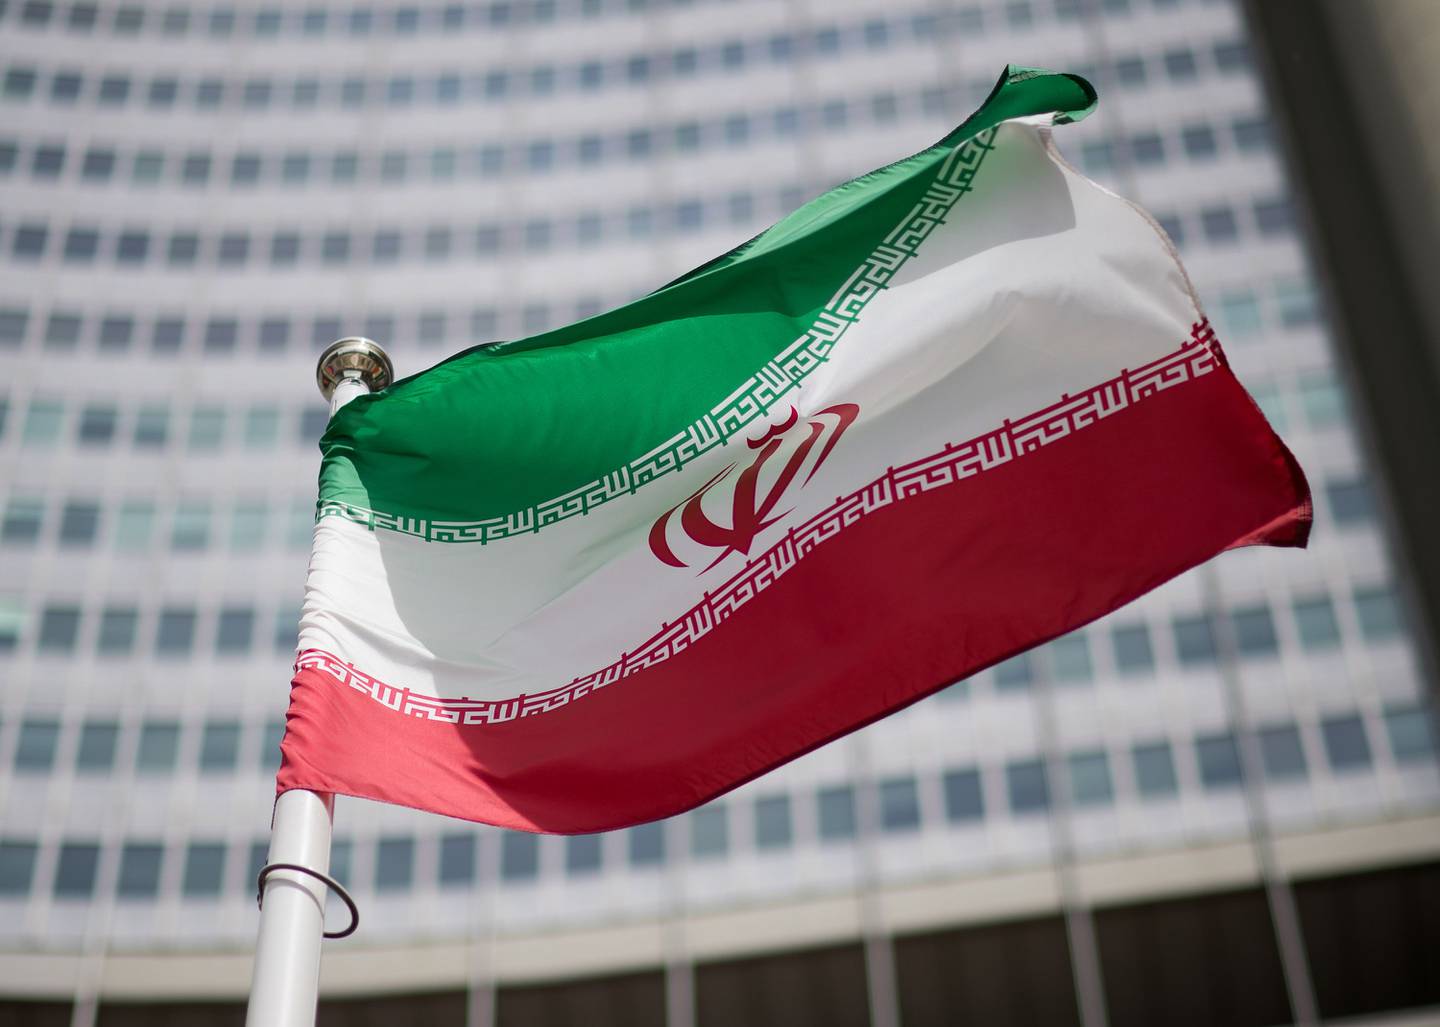 La bandera de Irán se ve delante del edificio de la sede del Organismo Internacional de Energía Atómica (OIEA) antes de una conferencia de prensa de Rafael Grossi, Director General del OIEA, sobre la supervisión del programa de energía nuclear de Irán por parte del organismo, el 24 de mayo de 2021 en Viena, Austria.